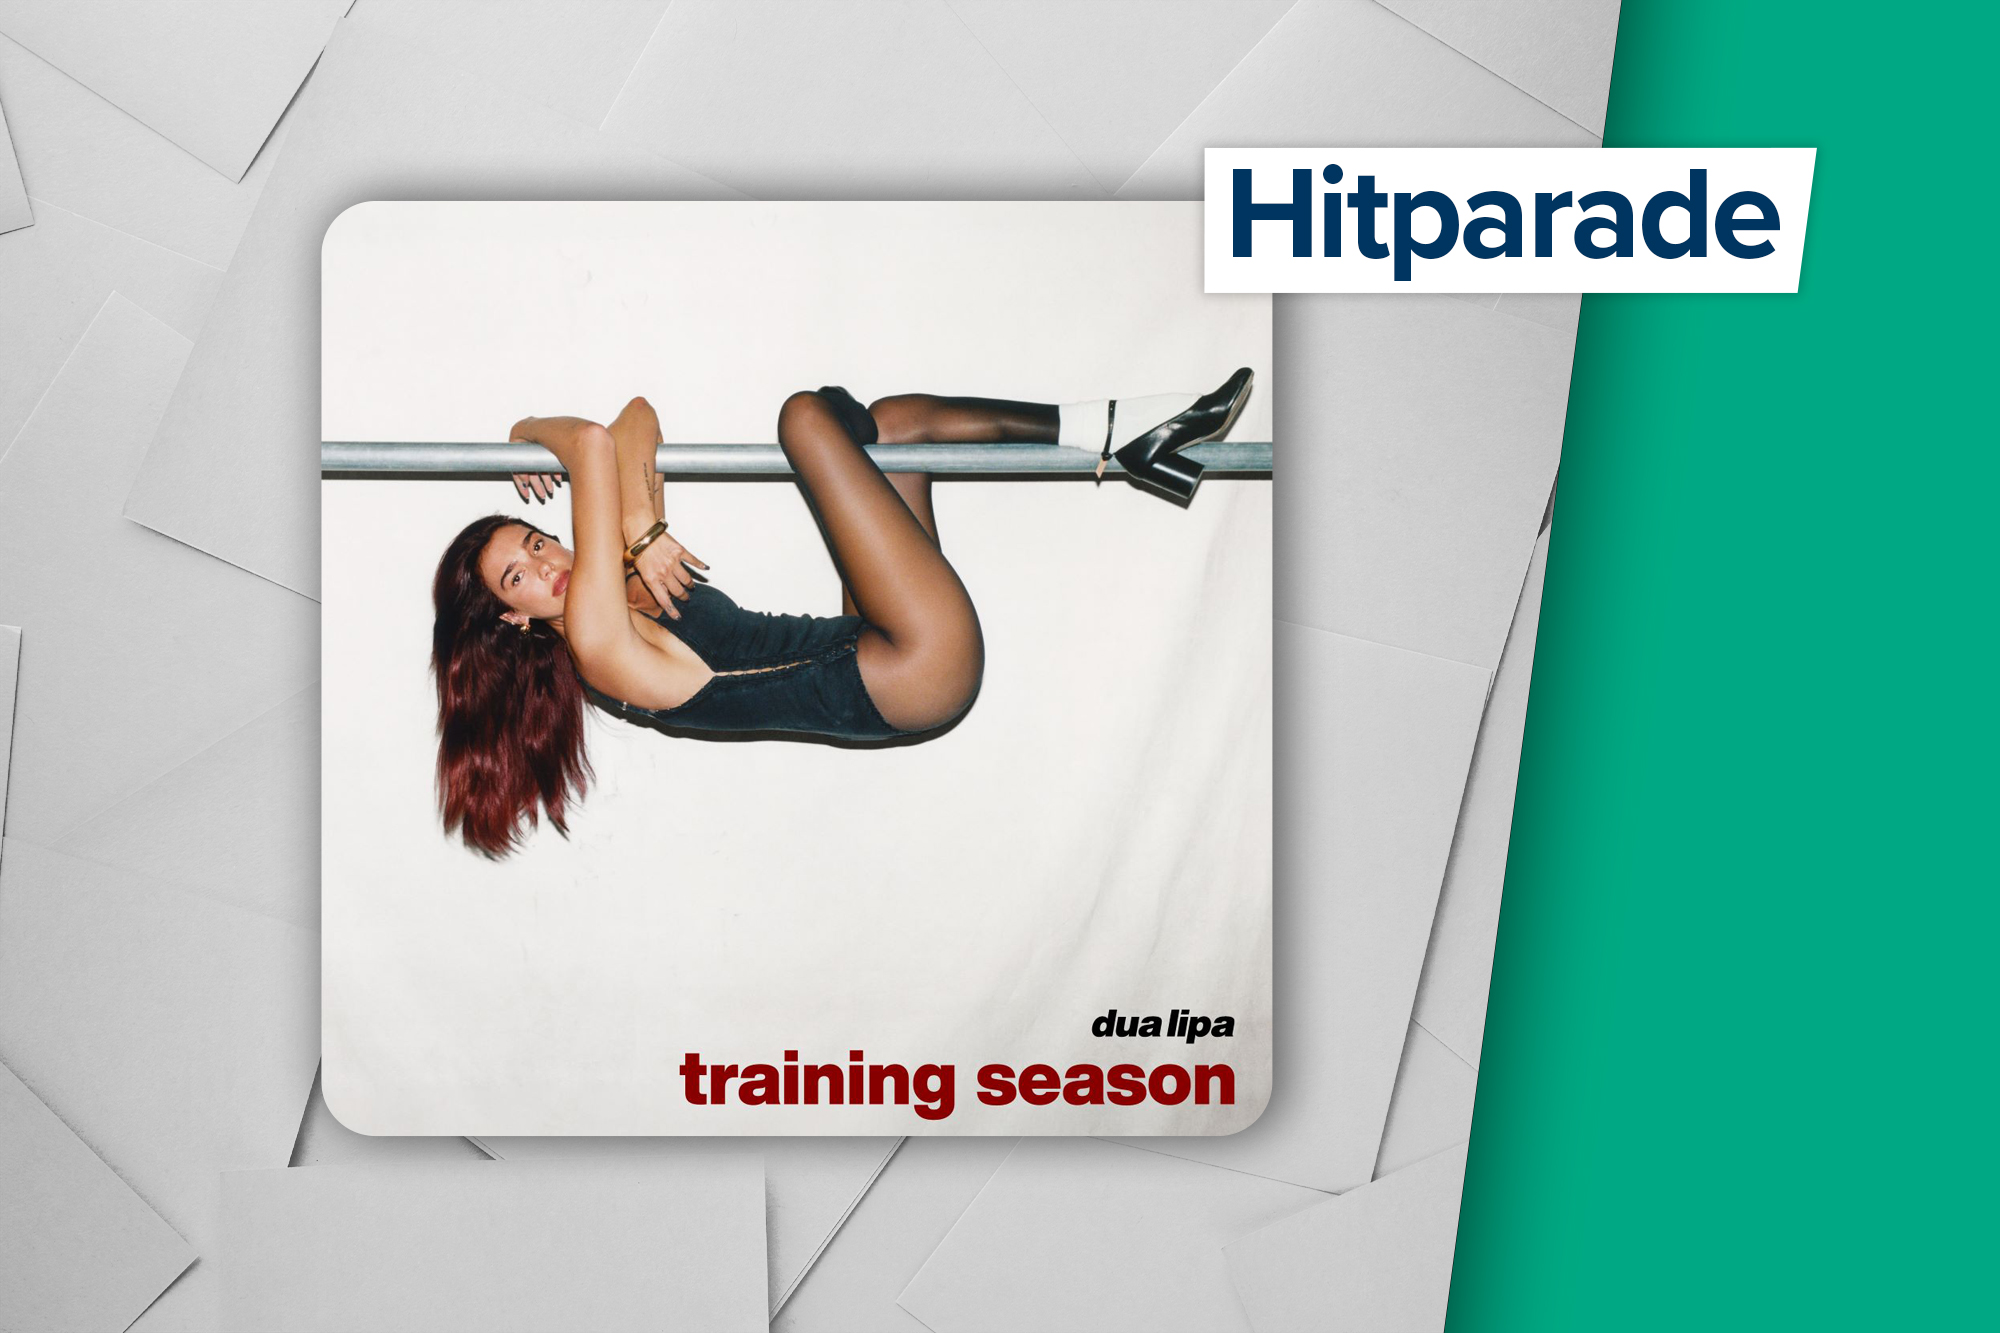 Höchster Neueinstieg in der Hitparade: "Training Season" von Dua Lipa (Label: UMD/Urban)